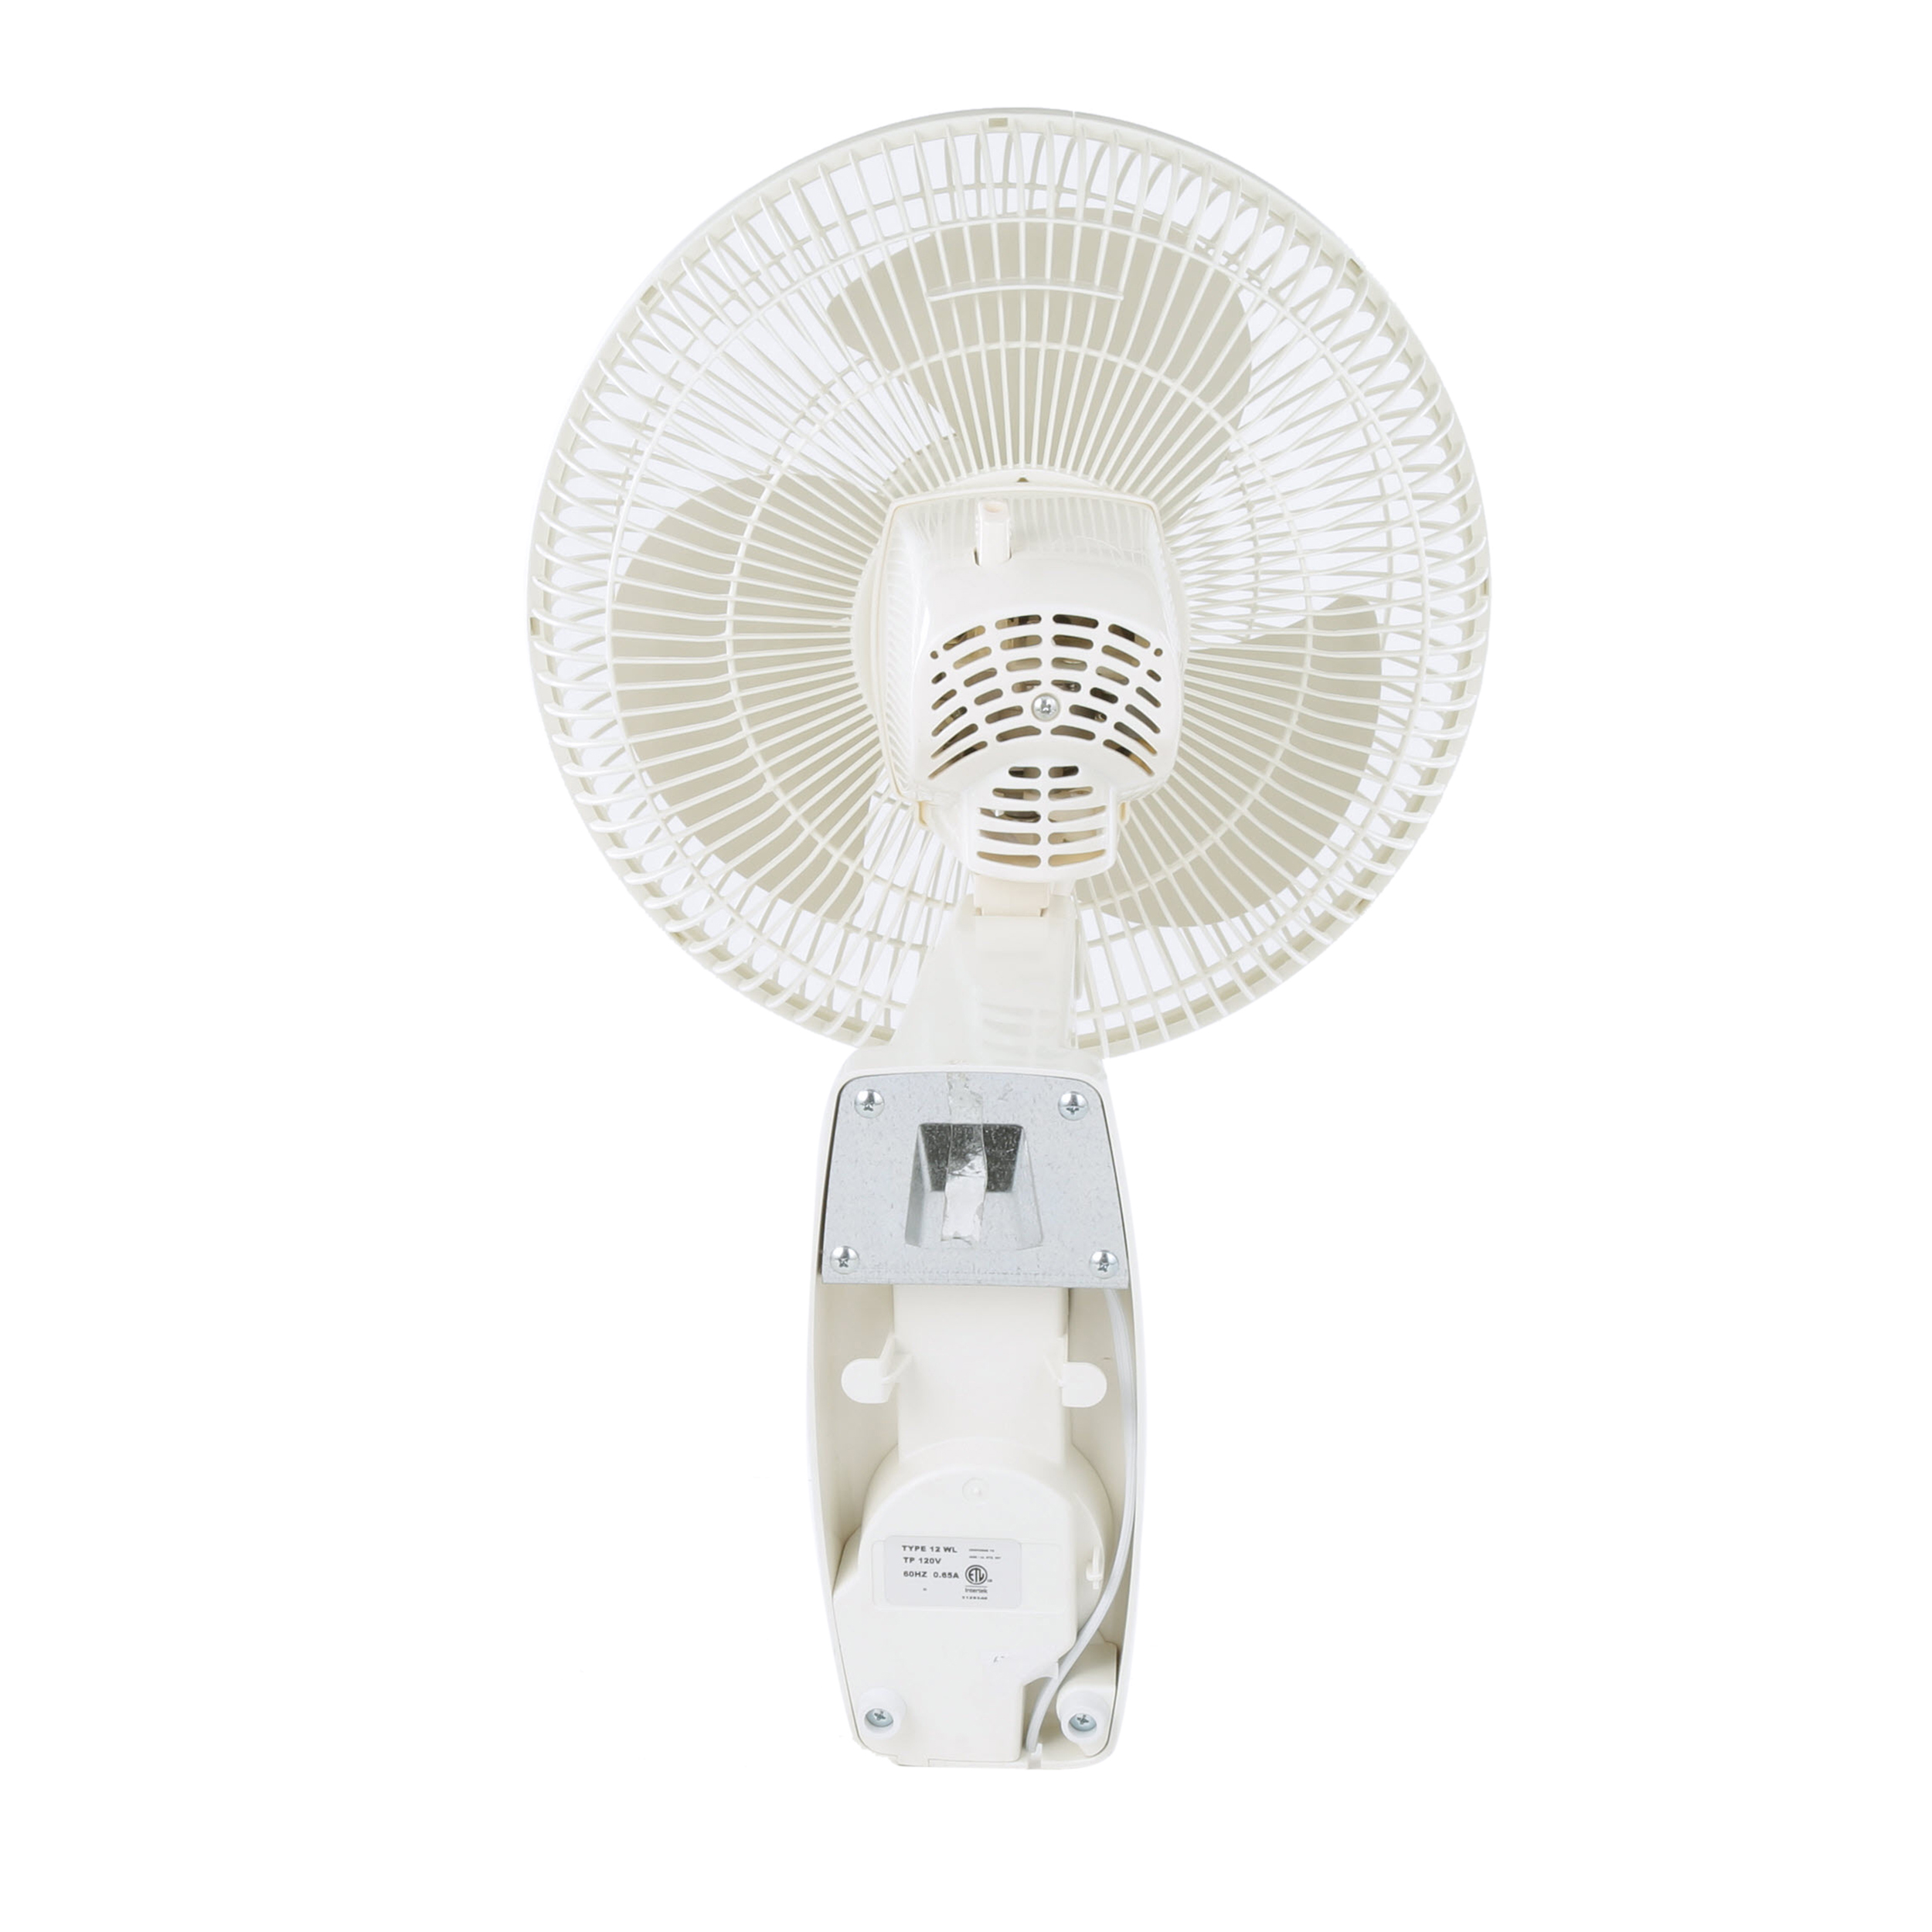 Lasko 12" Oscillating Wall Mount 3-Speed Fan, Model #3012, White - image 3 of 9